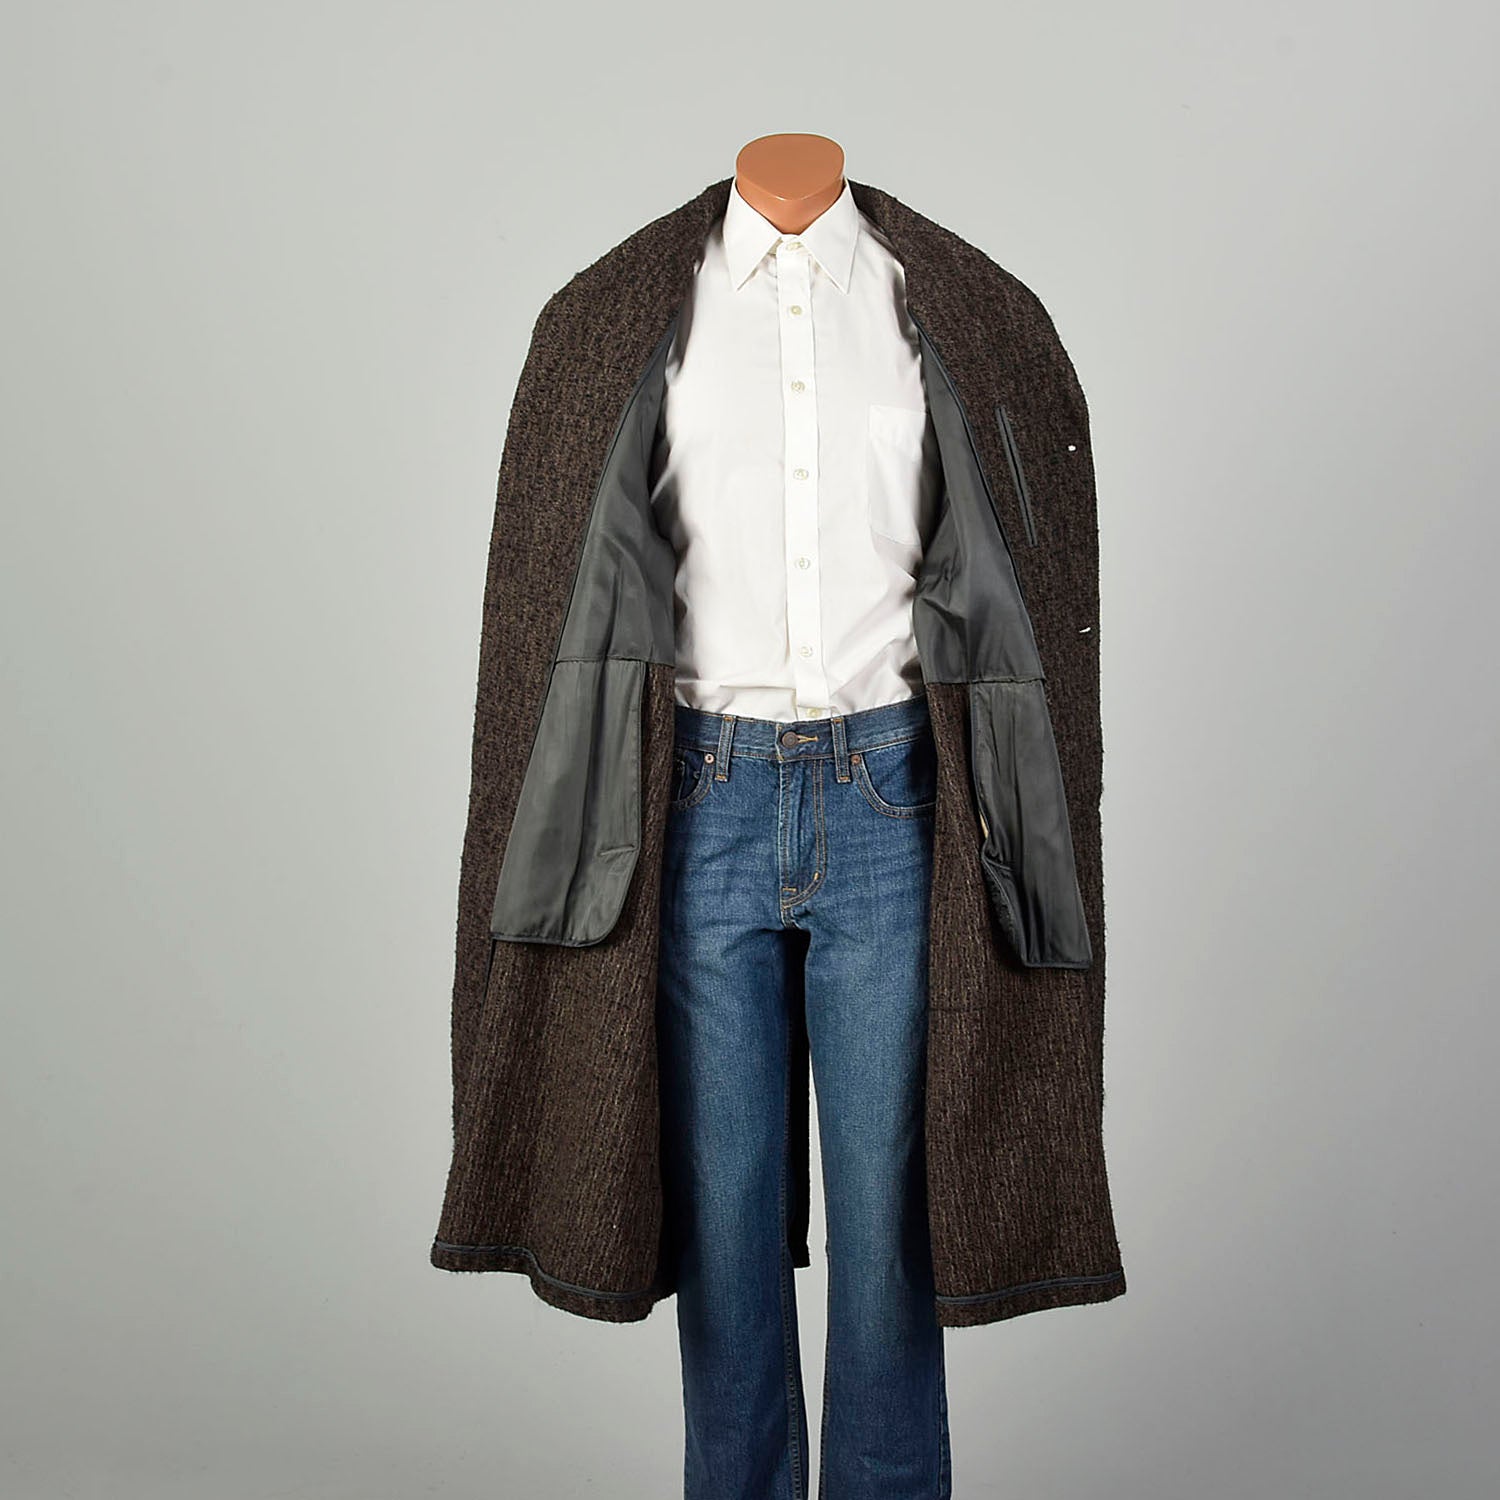 XXL 1950s Coat Brown Boucle Wool Tweed Winter Overcoat